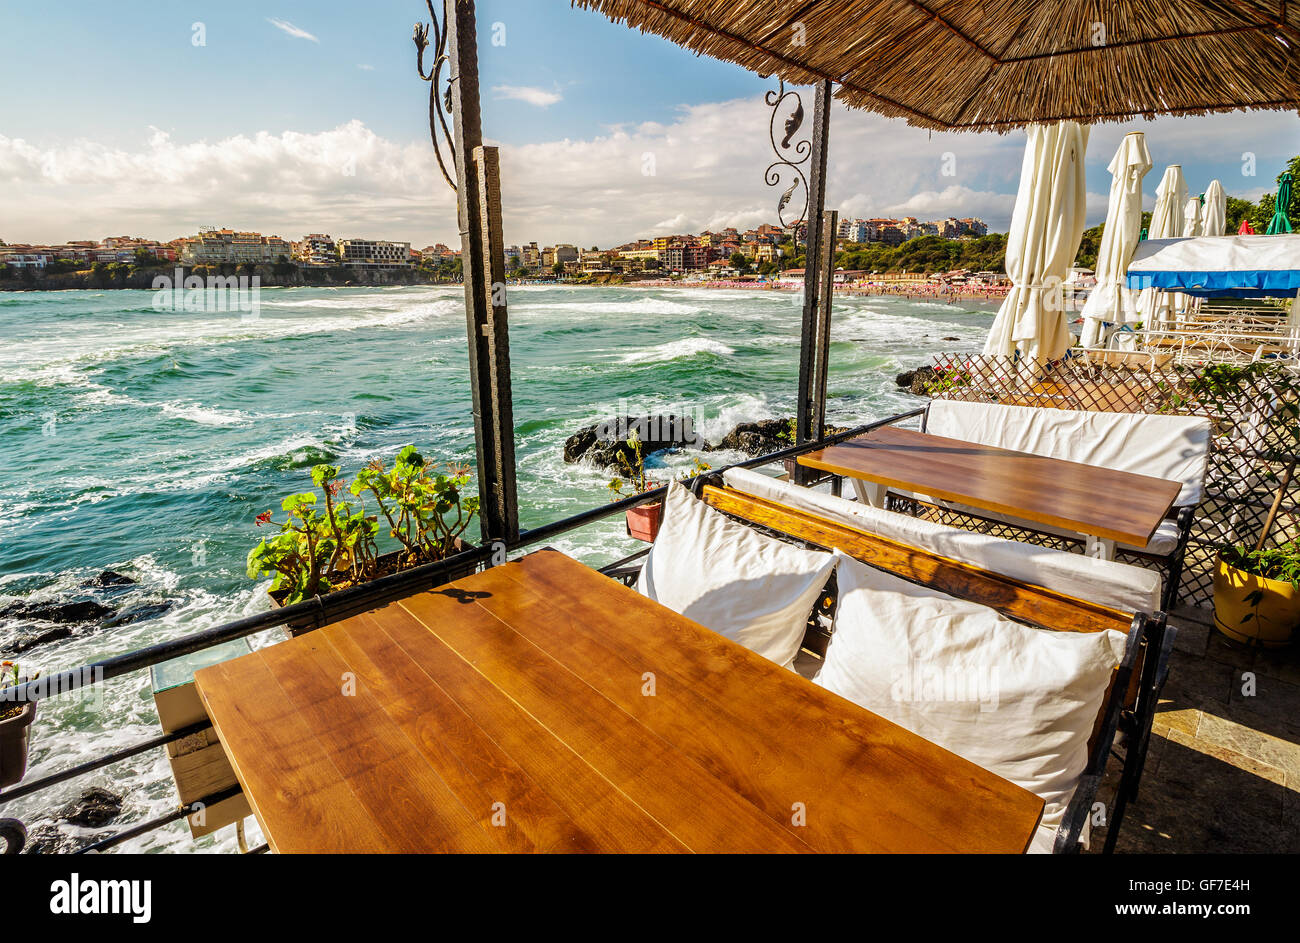 Restauranttisch mit Bank und Kissen an der Meeresküste in Altstadt Stockfoto